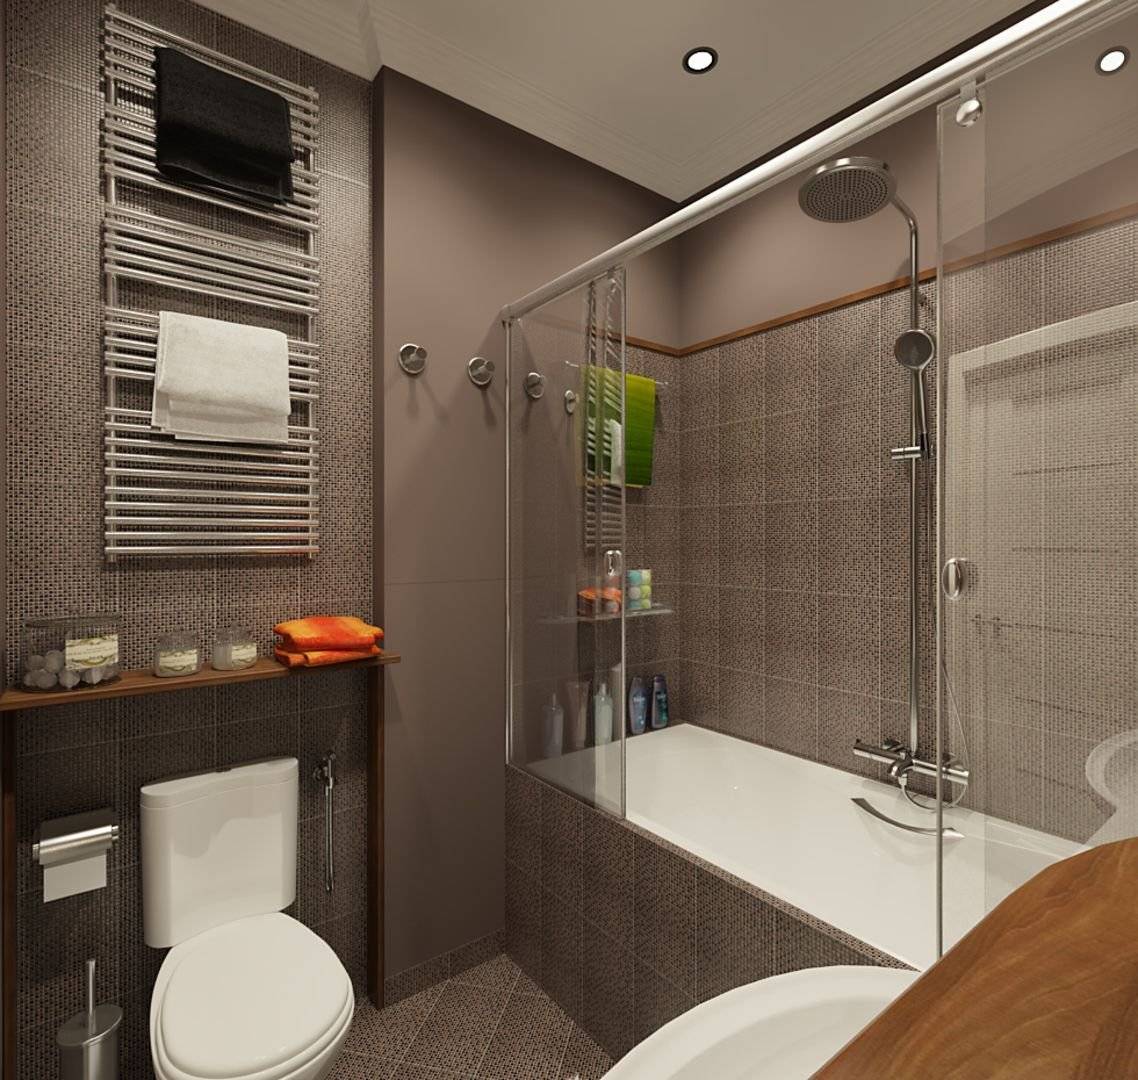 Маленькая ванная комната (119 фото) - дизайн интерьера угловой ванной, маленькой площади с душевой кабиной, туалетом и стиральной машиной